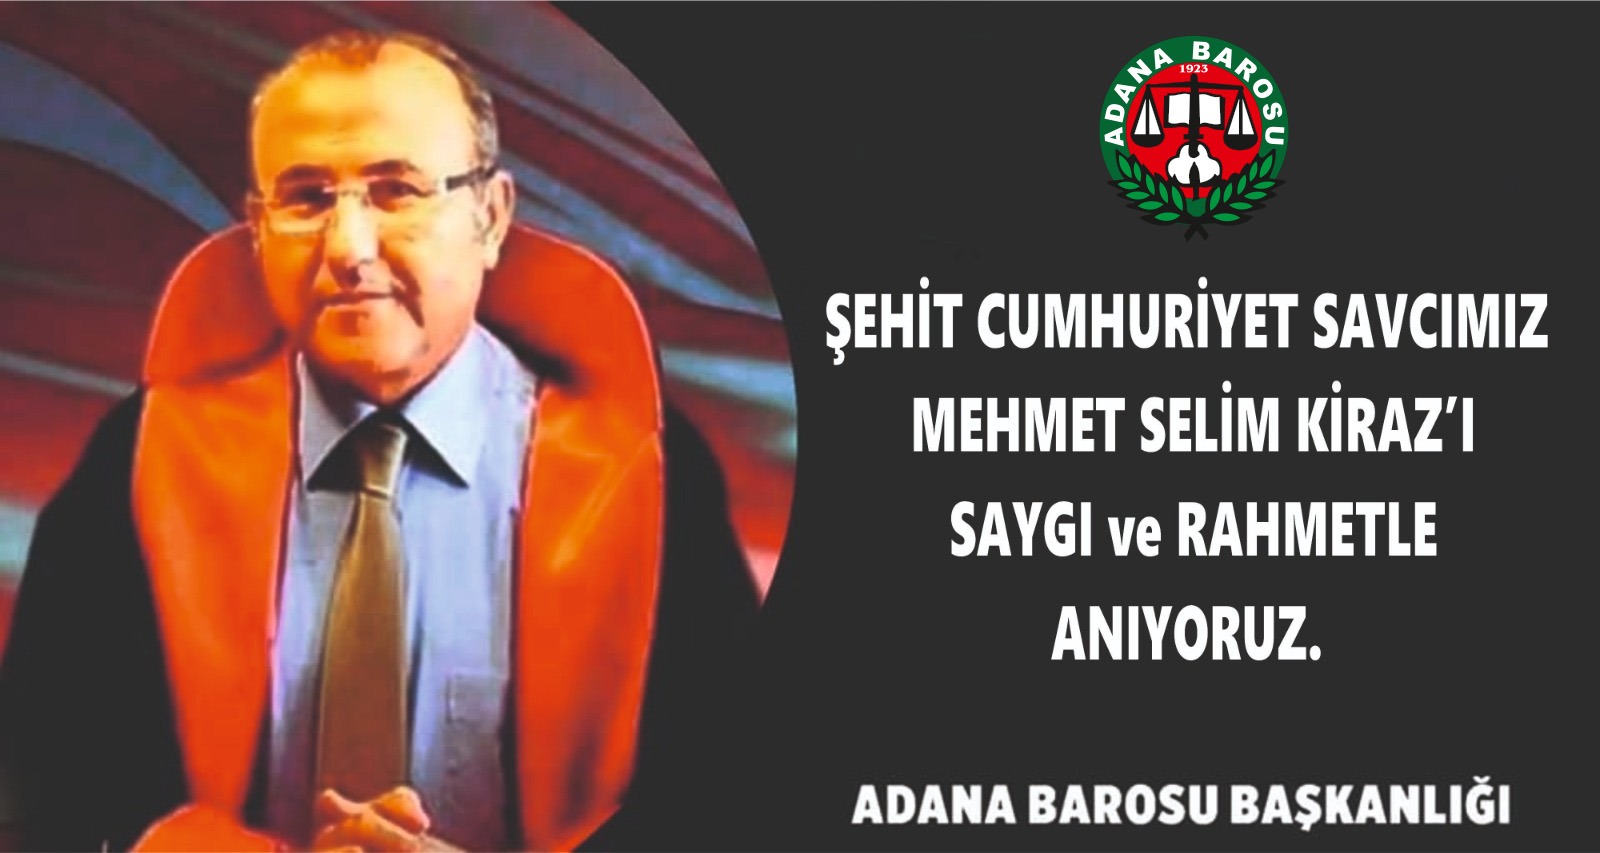 Cumhuriyet Savcısı Mehmet Selim Kiraz’ı rahmet ve saygıyla anıyoruz